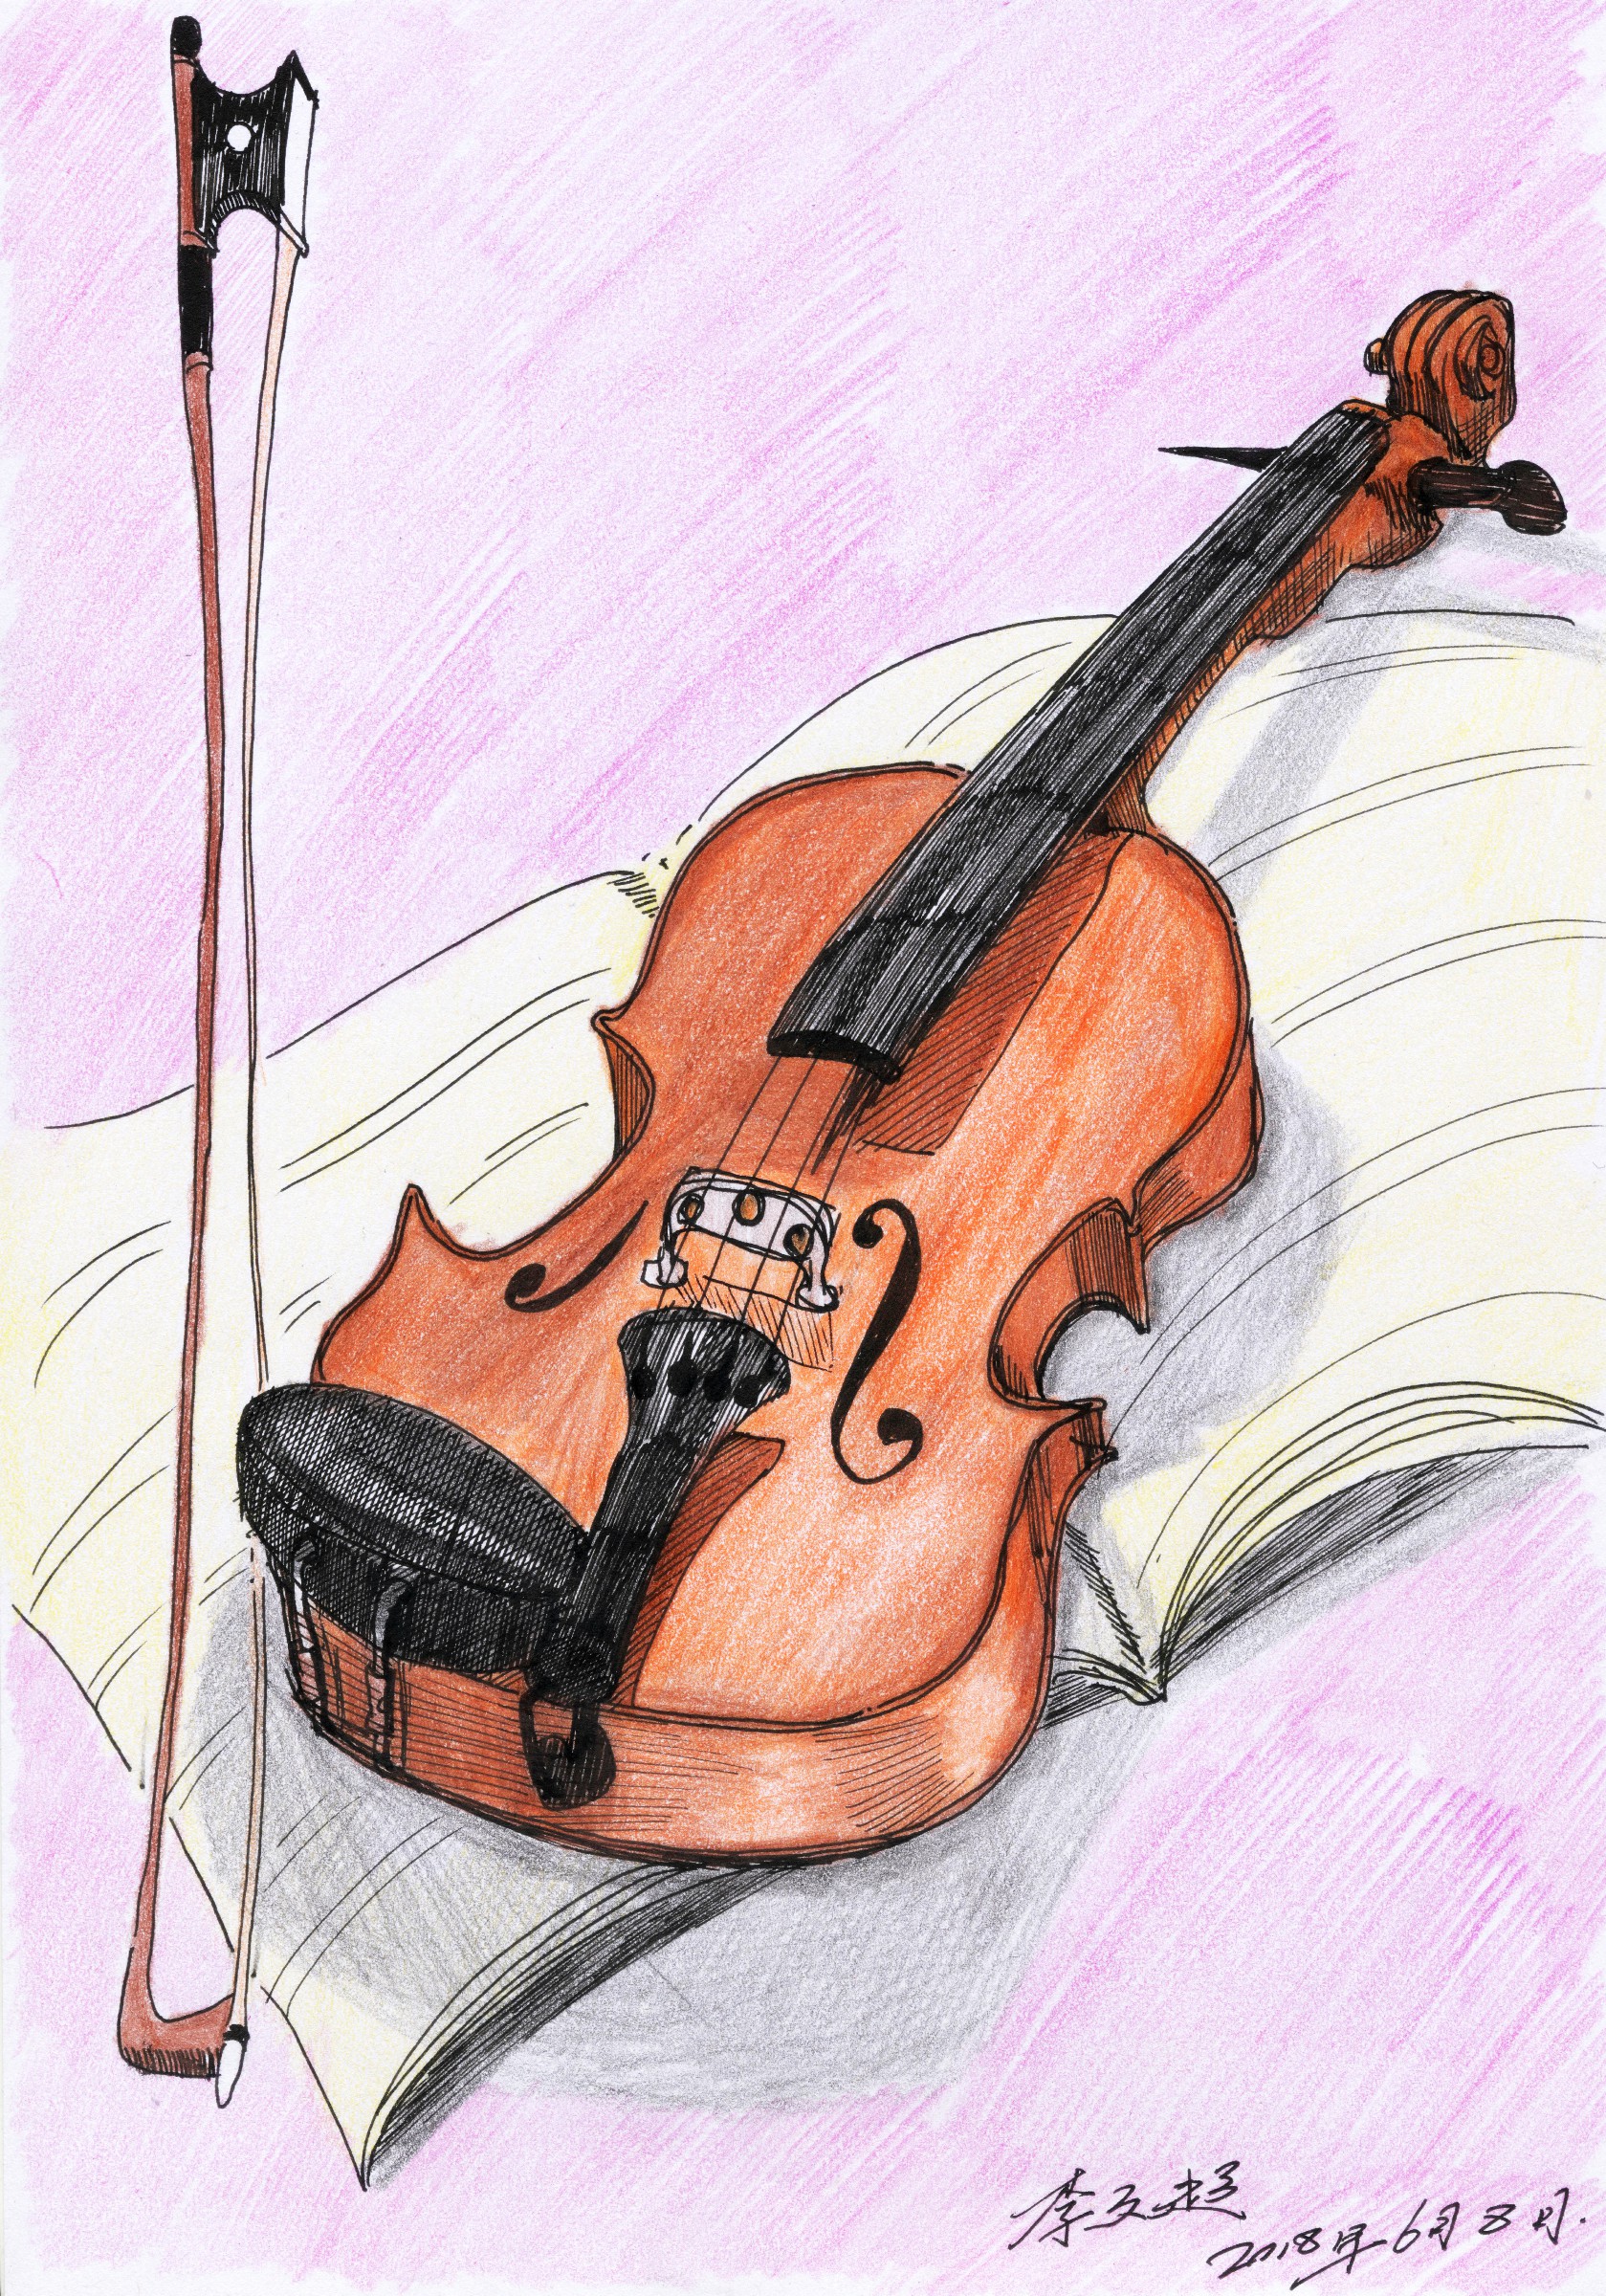 【涂鸦】李文超的钢笔速写,彩铅上色,小提琴